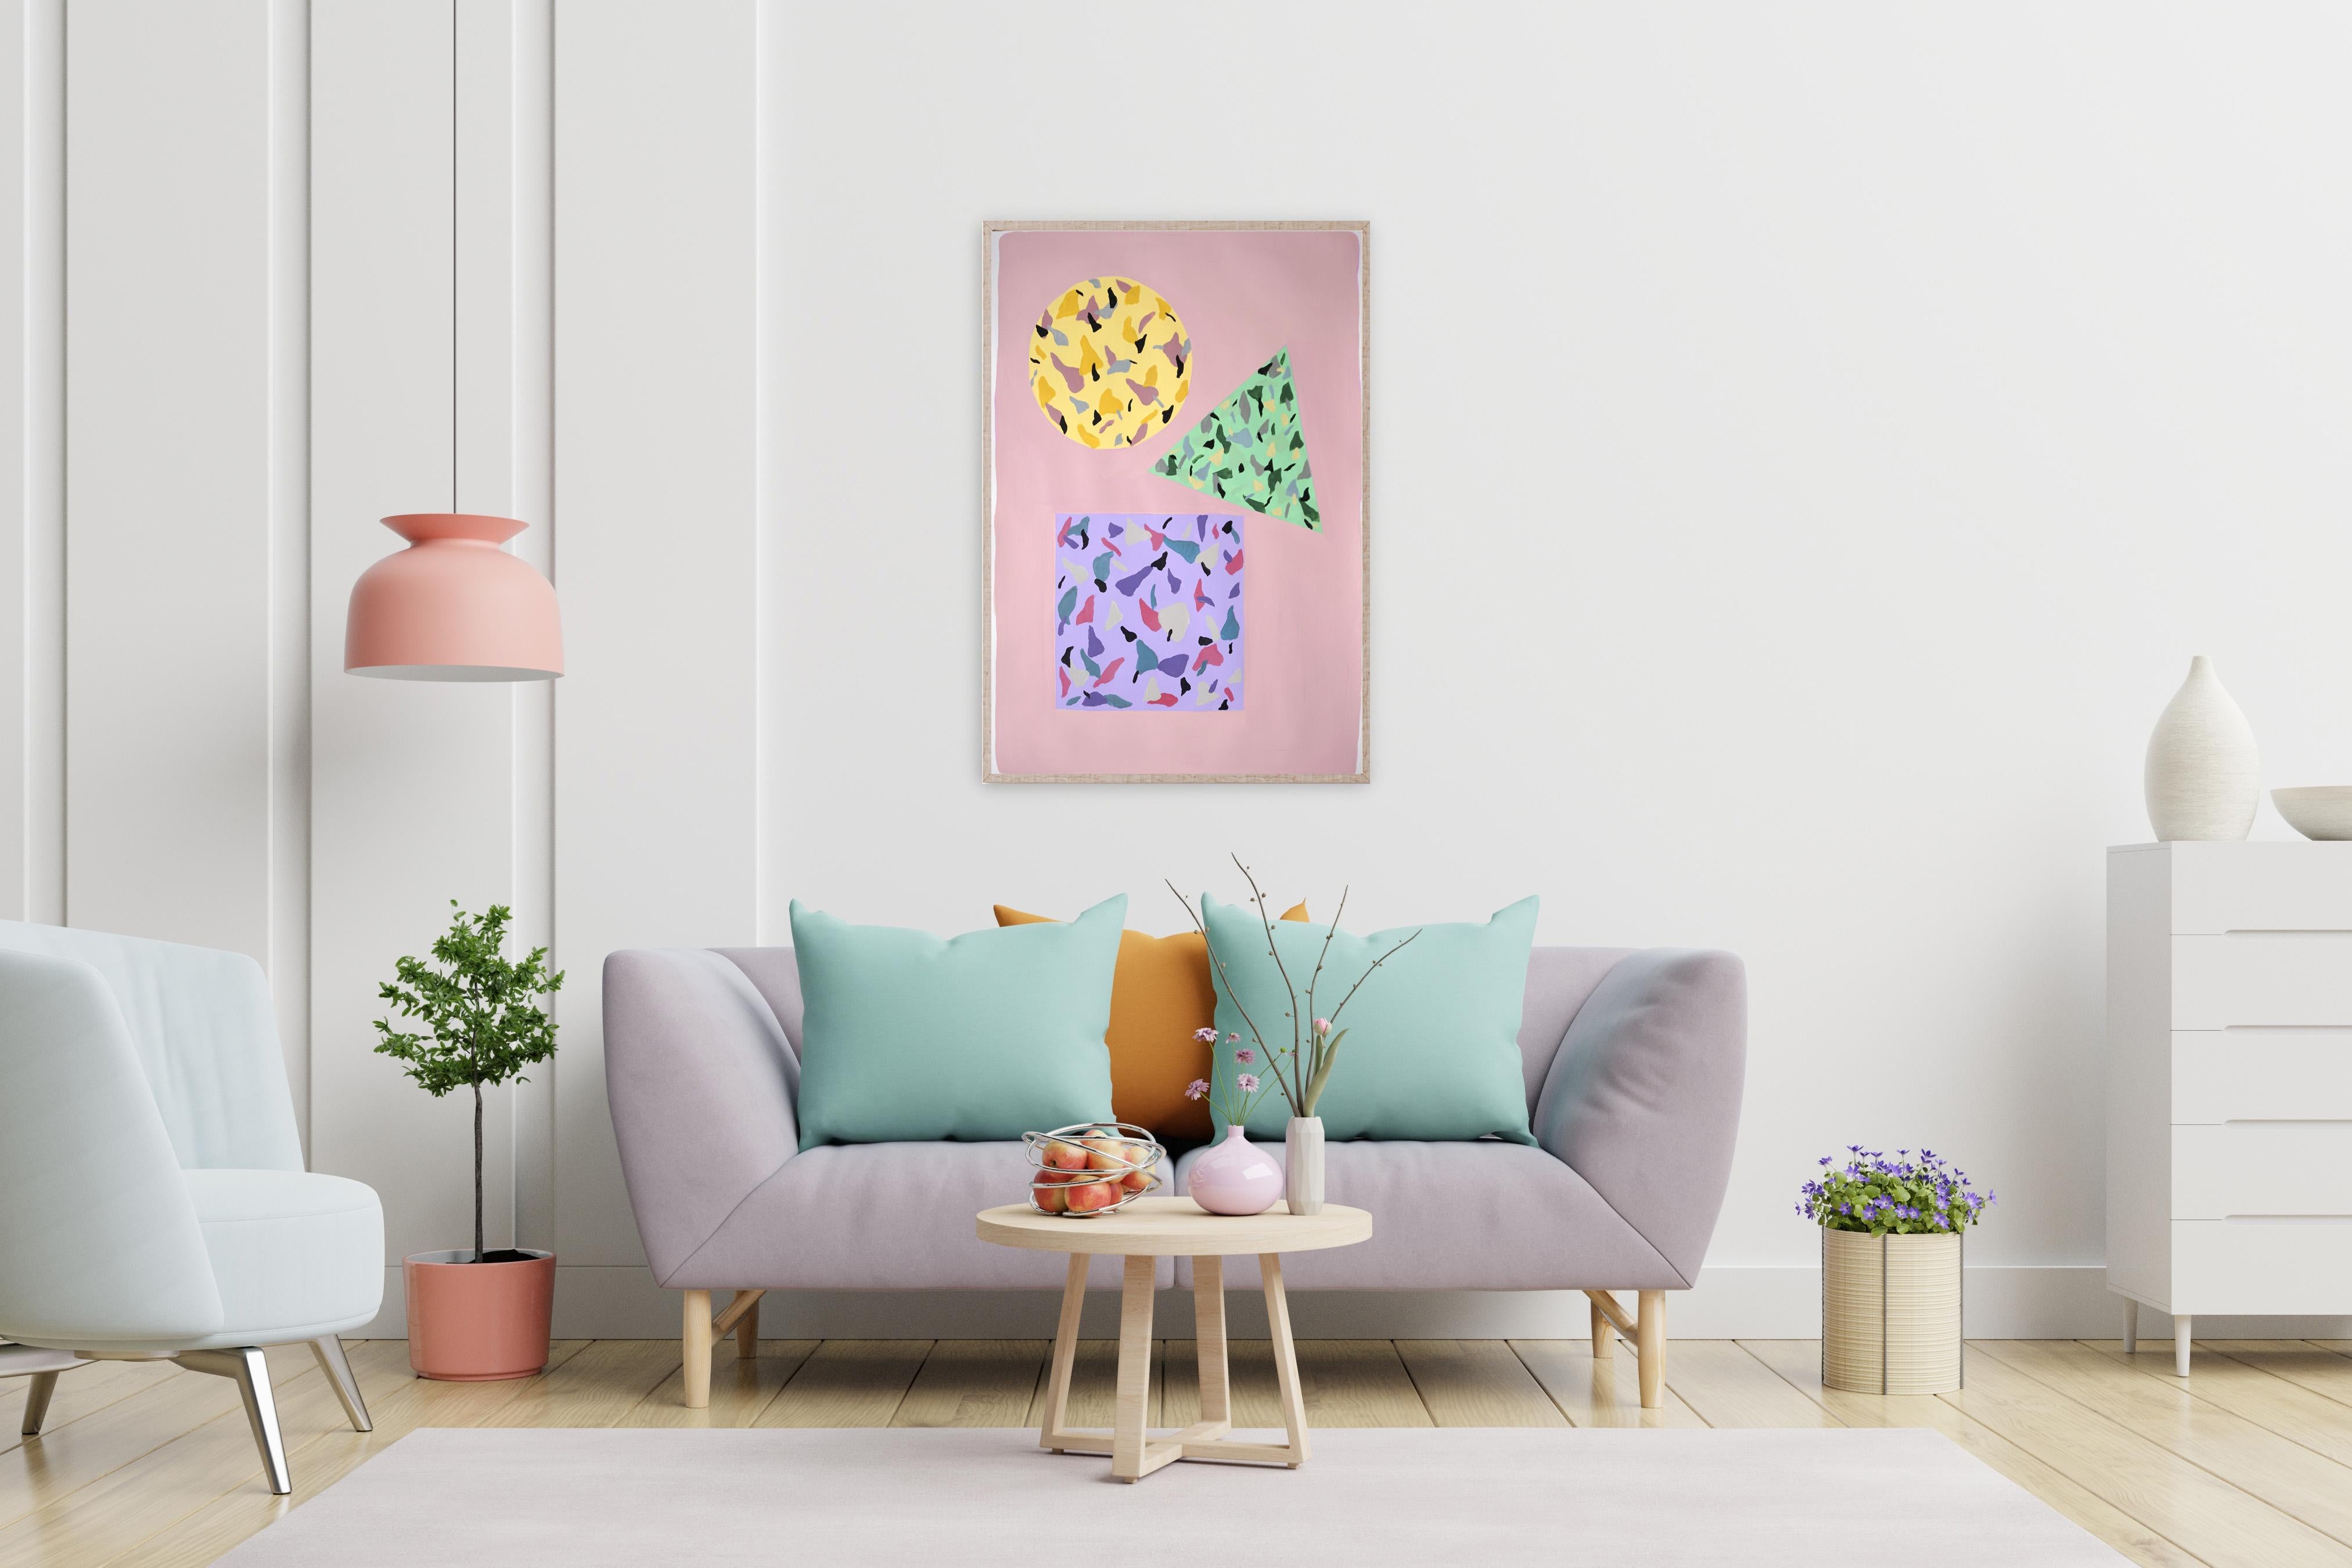 Tiles carrés, circulaires et triangulaires roses et jaunes, géométrie flottante sur papier - Géométrique abstrait Painting par Natalia Roman